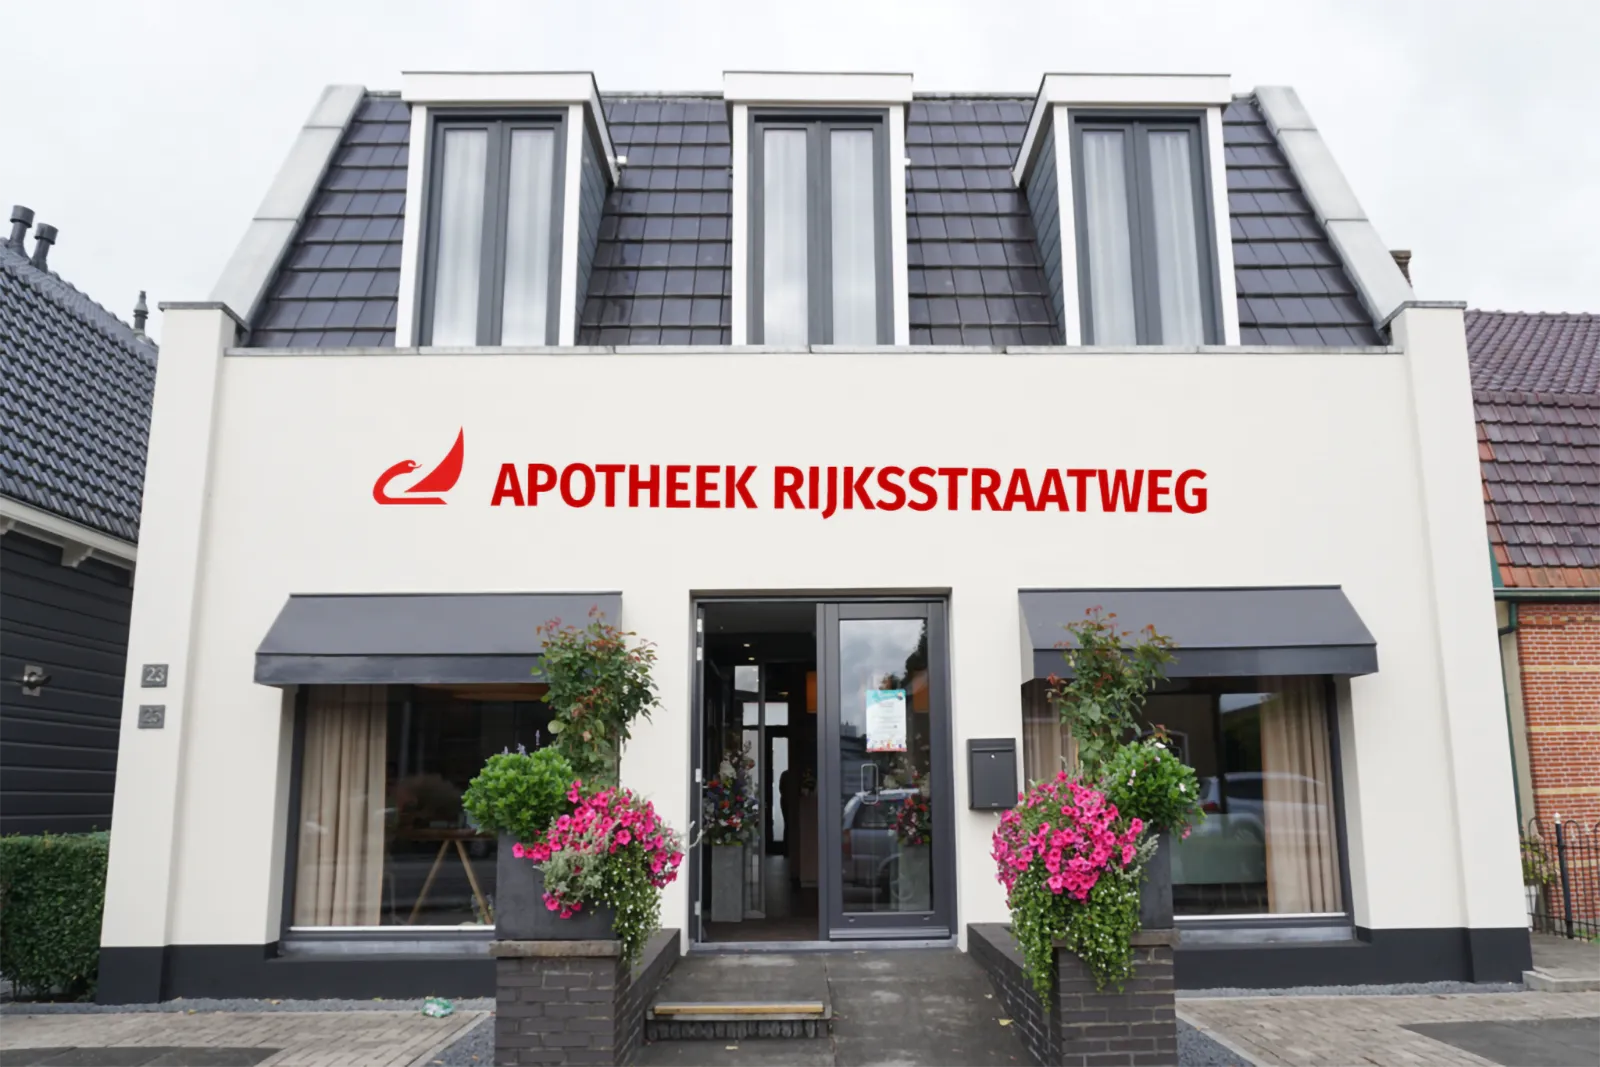 Apotheek Rijksstraatweg - full